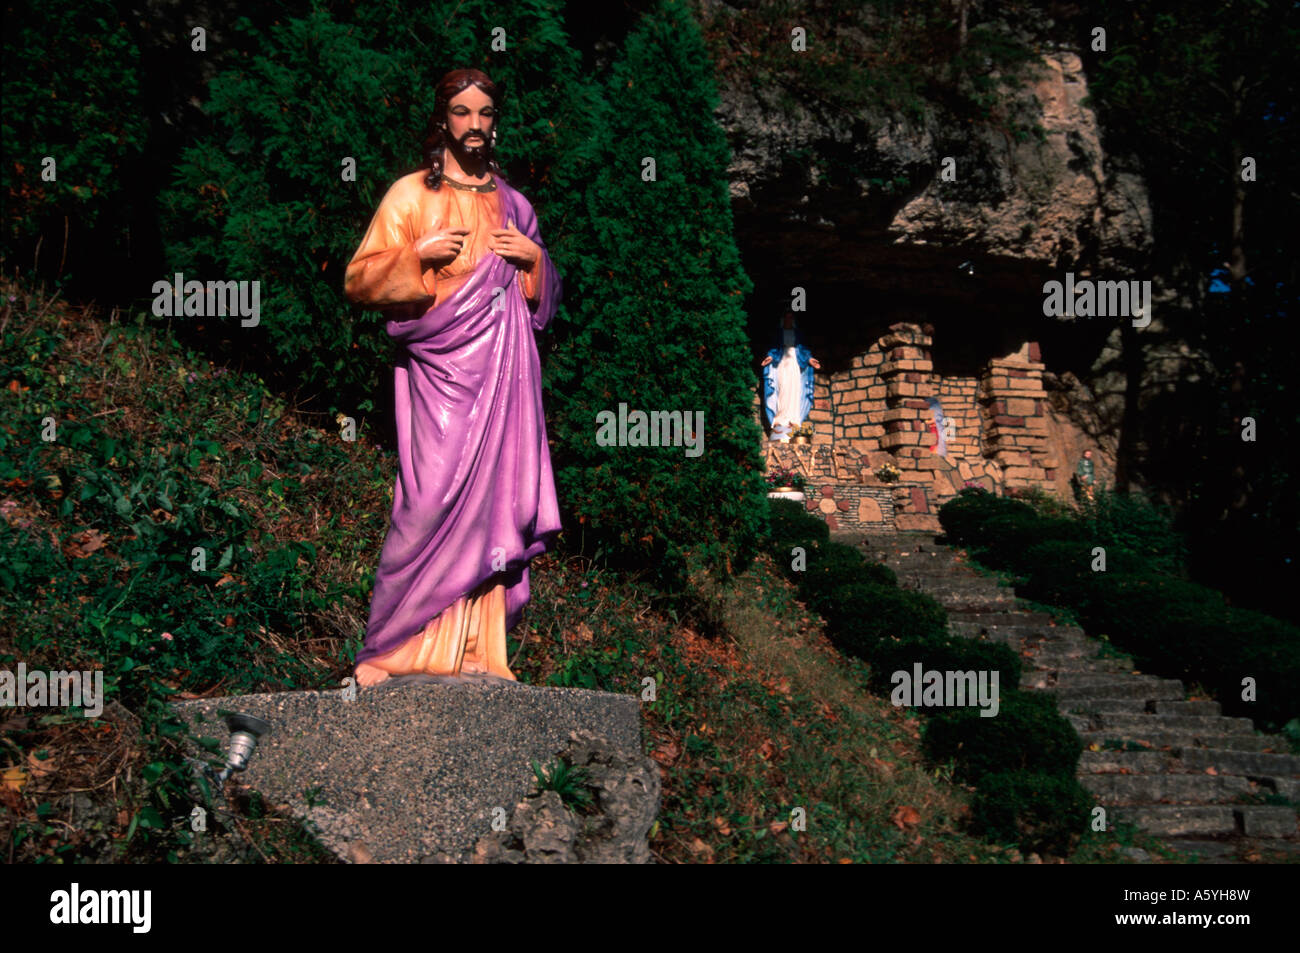 Painet iu2324 Grotte Schrein nördlich Buena Vista ia Engel gesegnet gehegt geweihten göttlichen verankerten göttlichen geheiligt Stockfoto